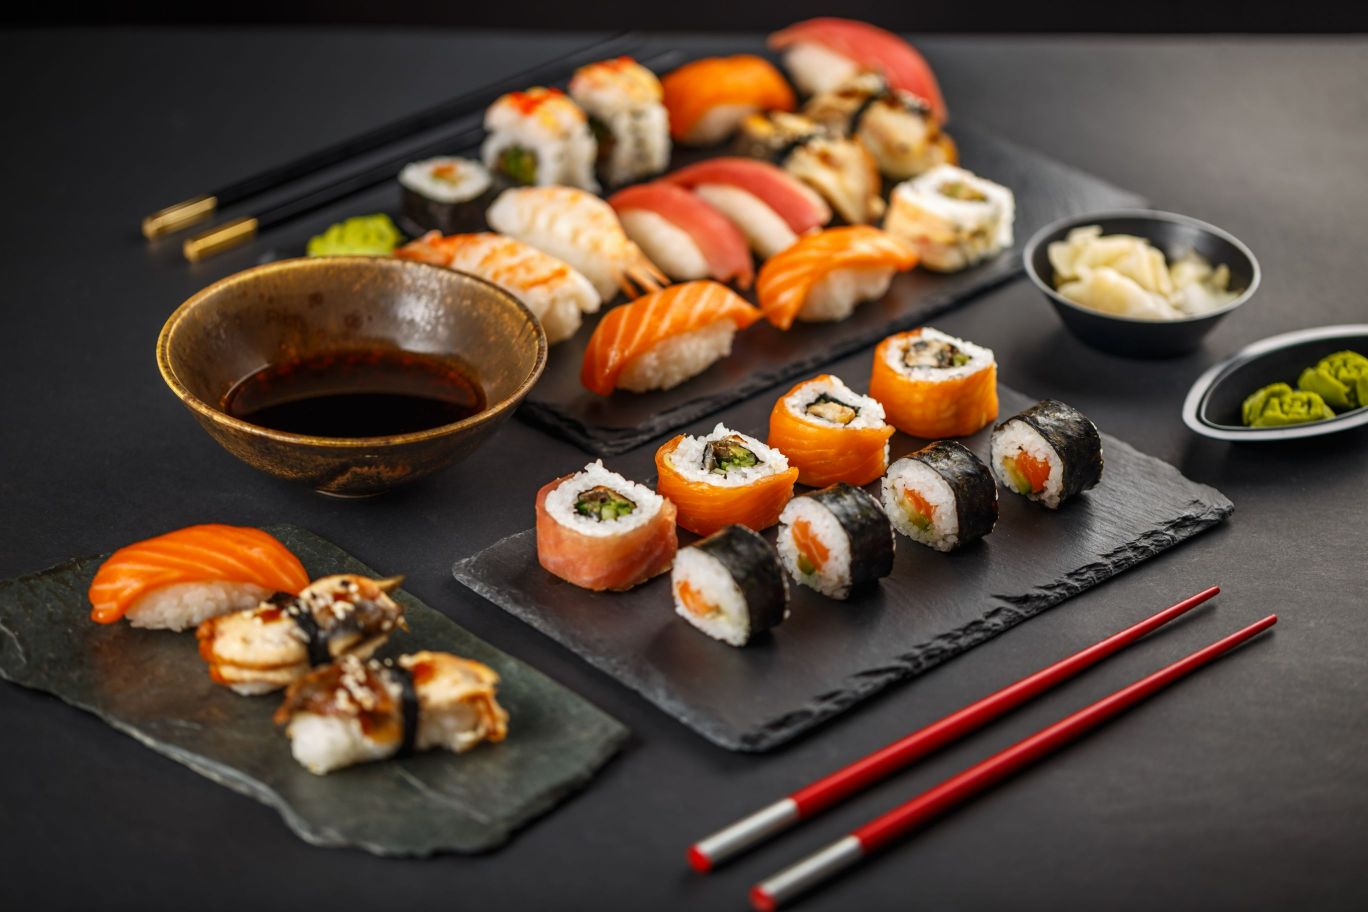 Cum se mănâncă corect Sushi?